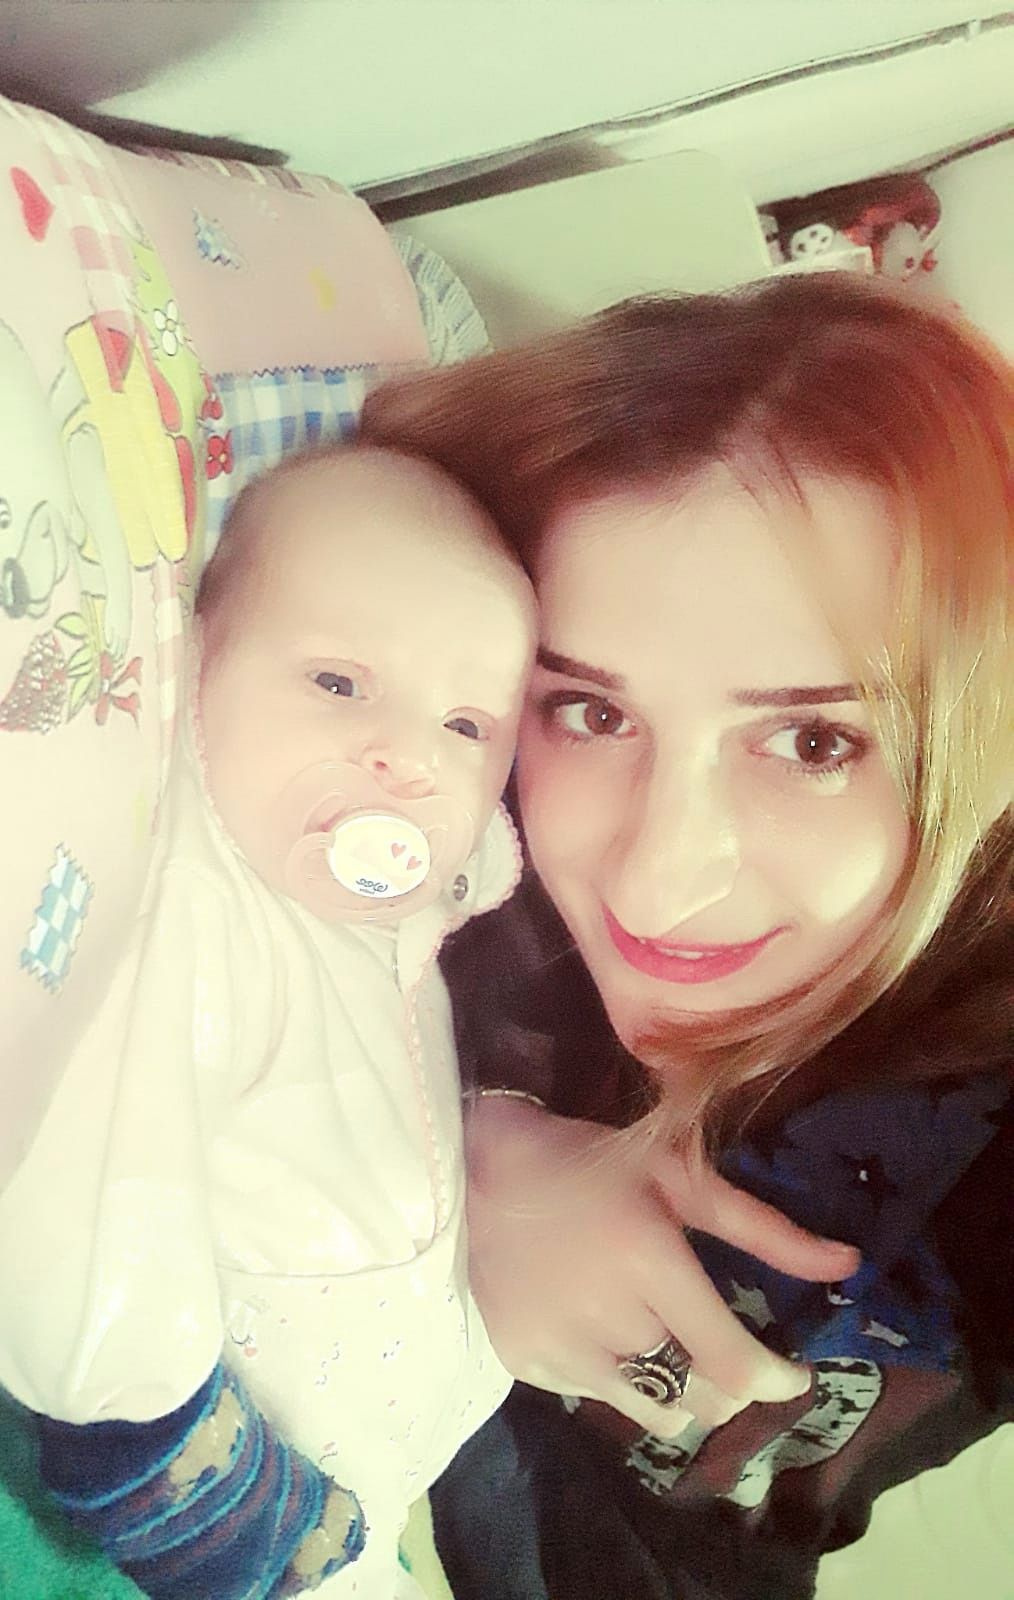 Antalya'da 3 aylık bebeğin ölümü şüpheli bulundu